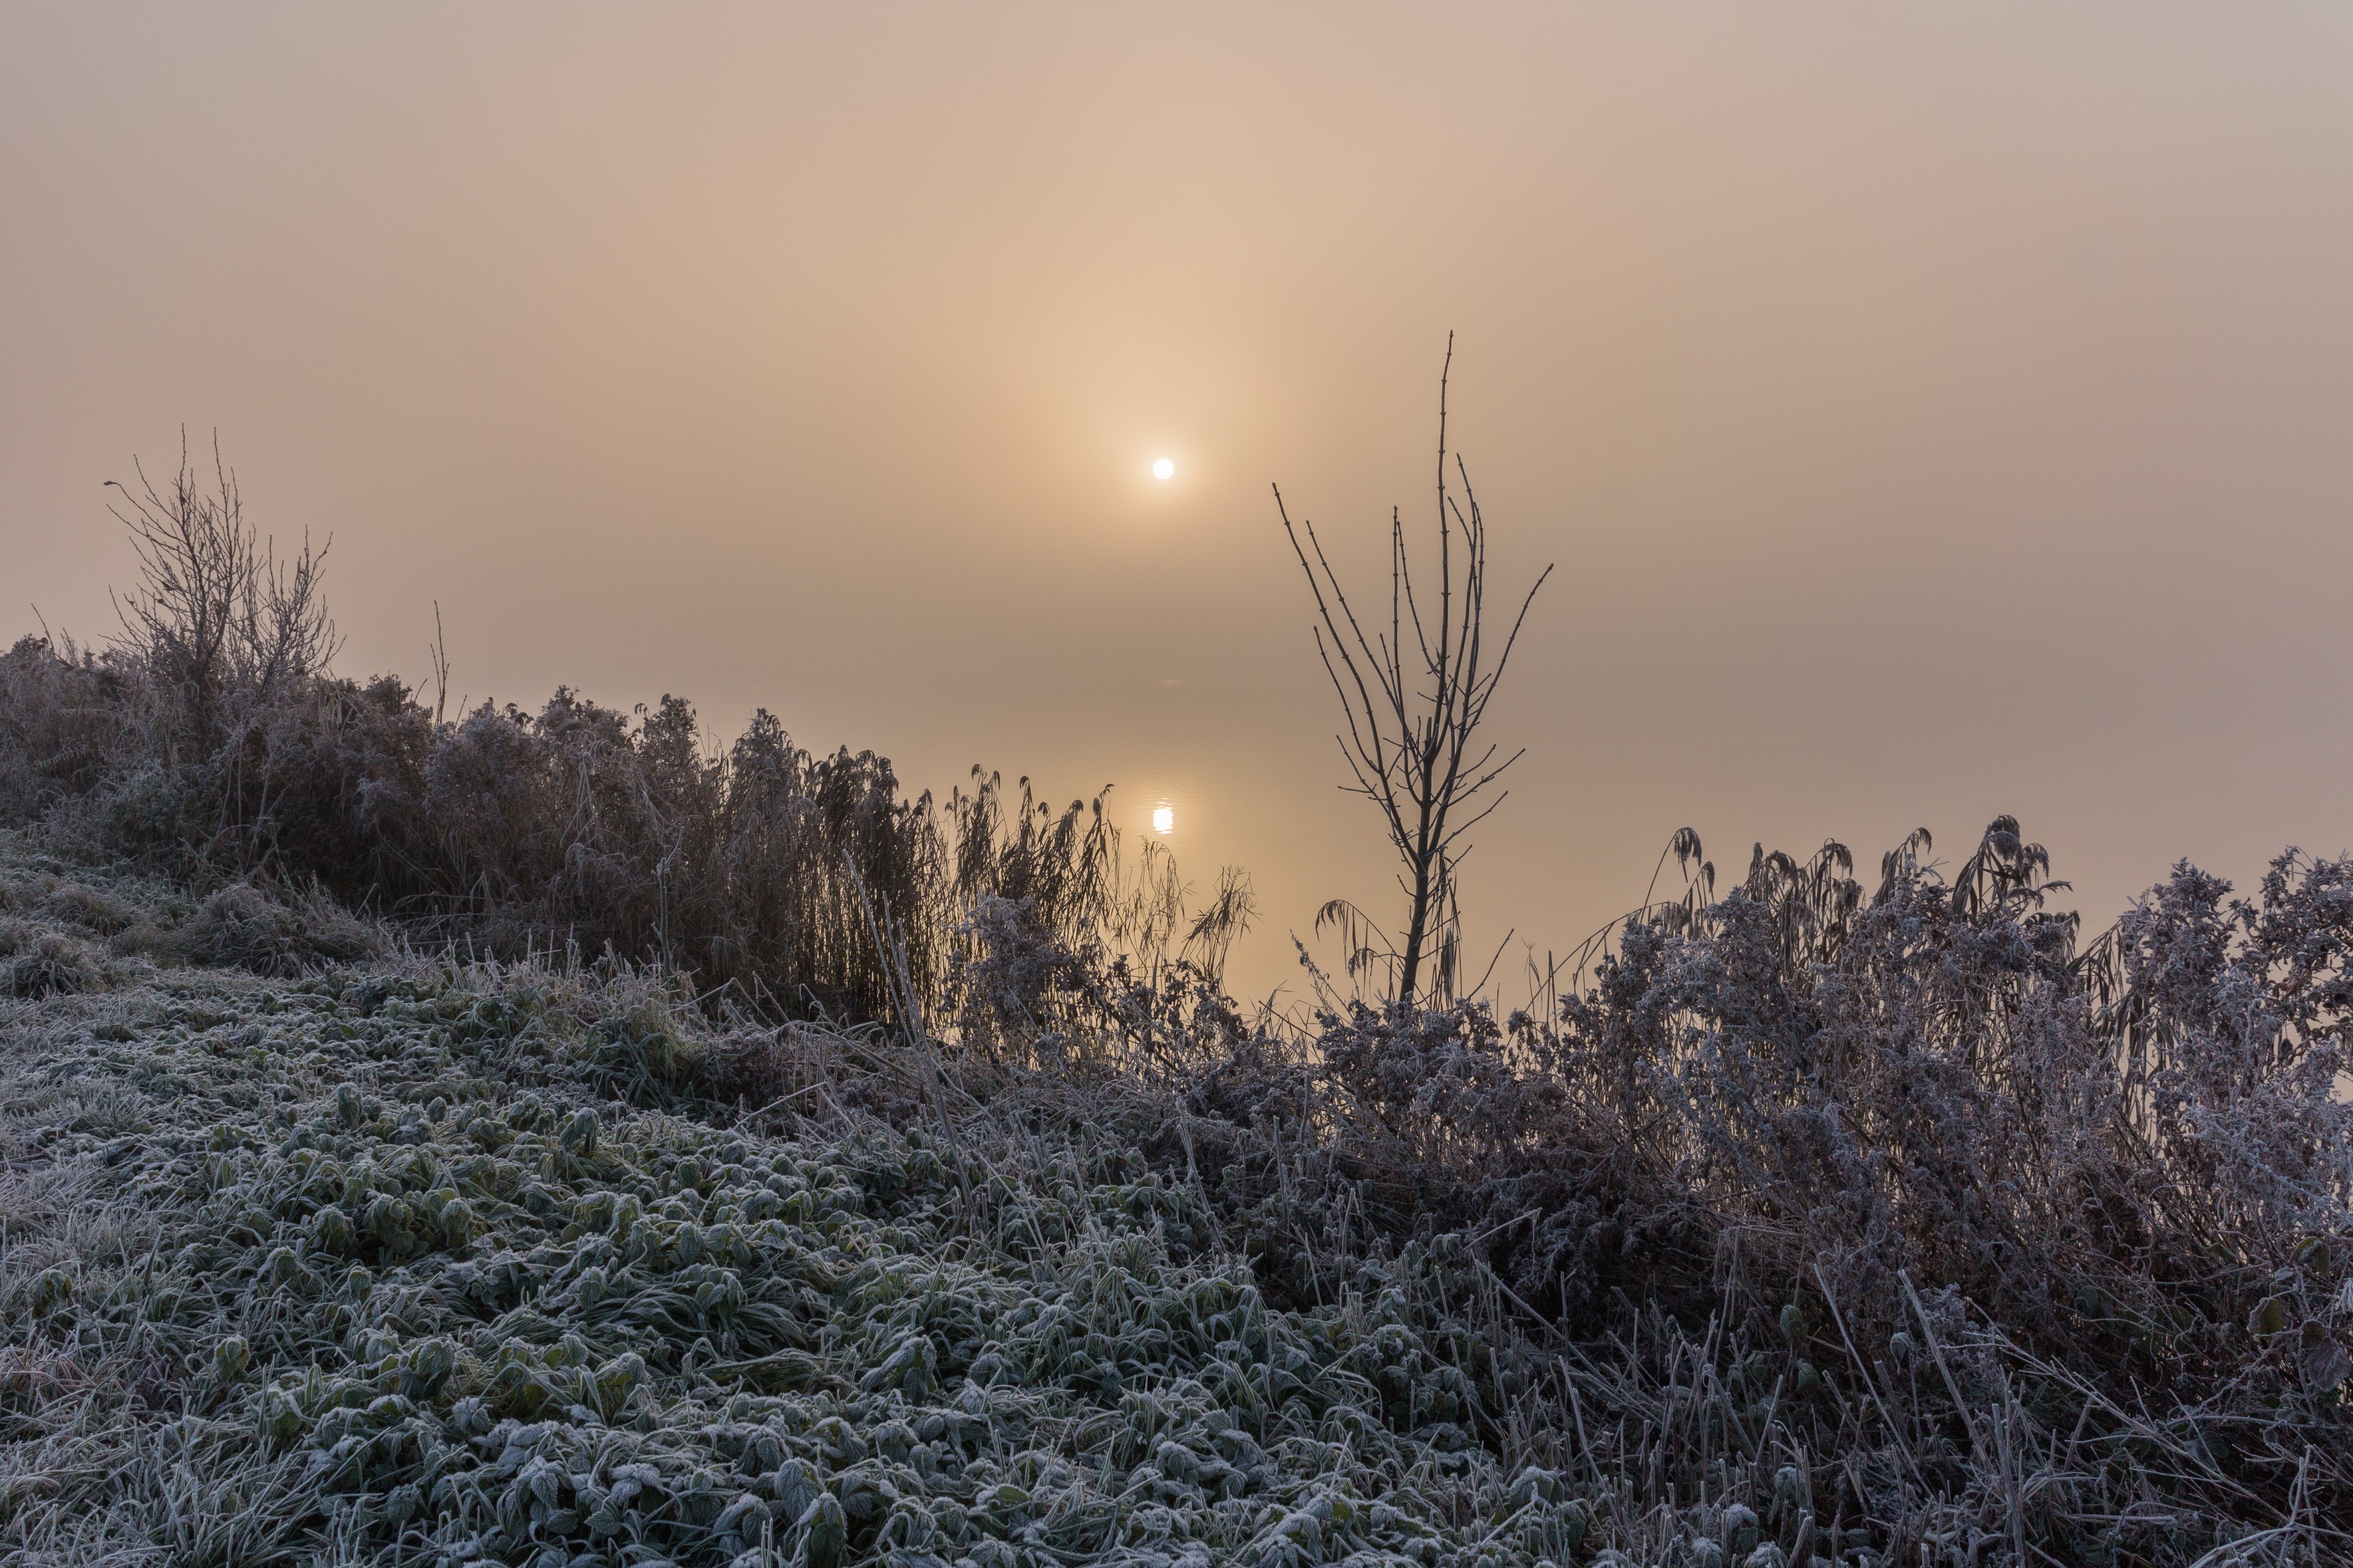 De zon probeert door de mist te breken. Locatie, Langweerderwielen (Langwarder Wielen) en omgeving 05